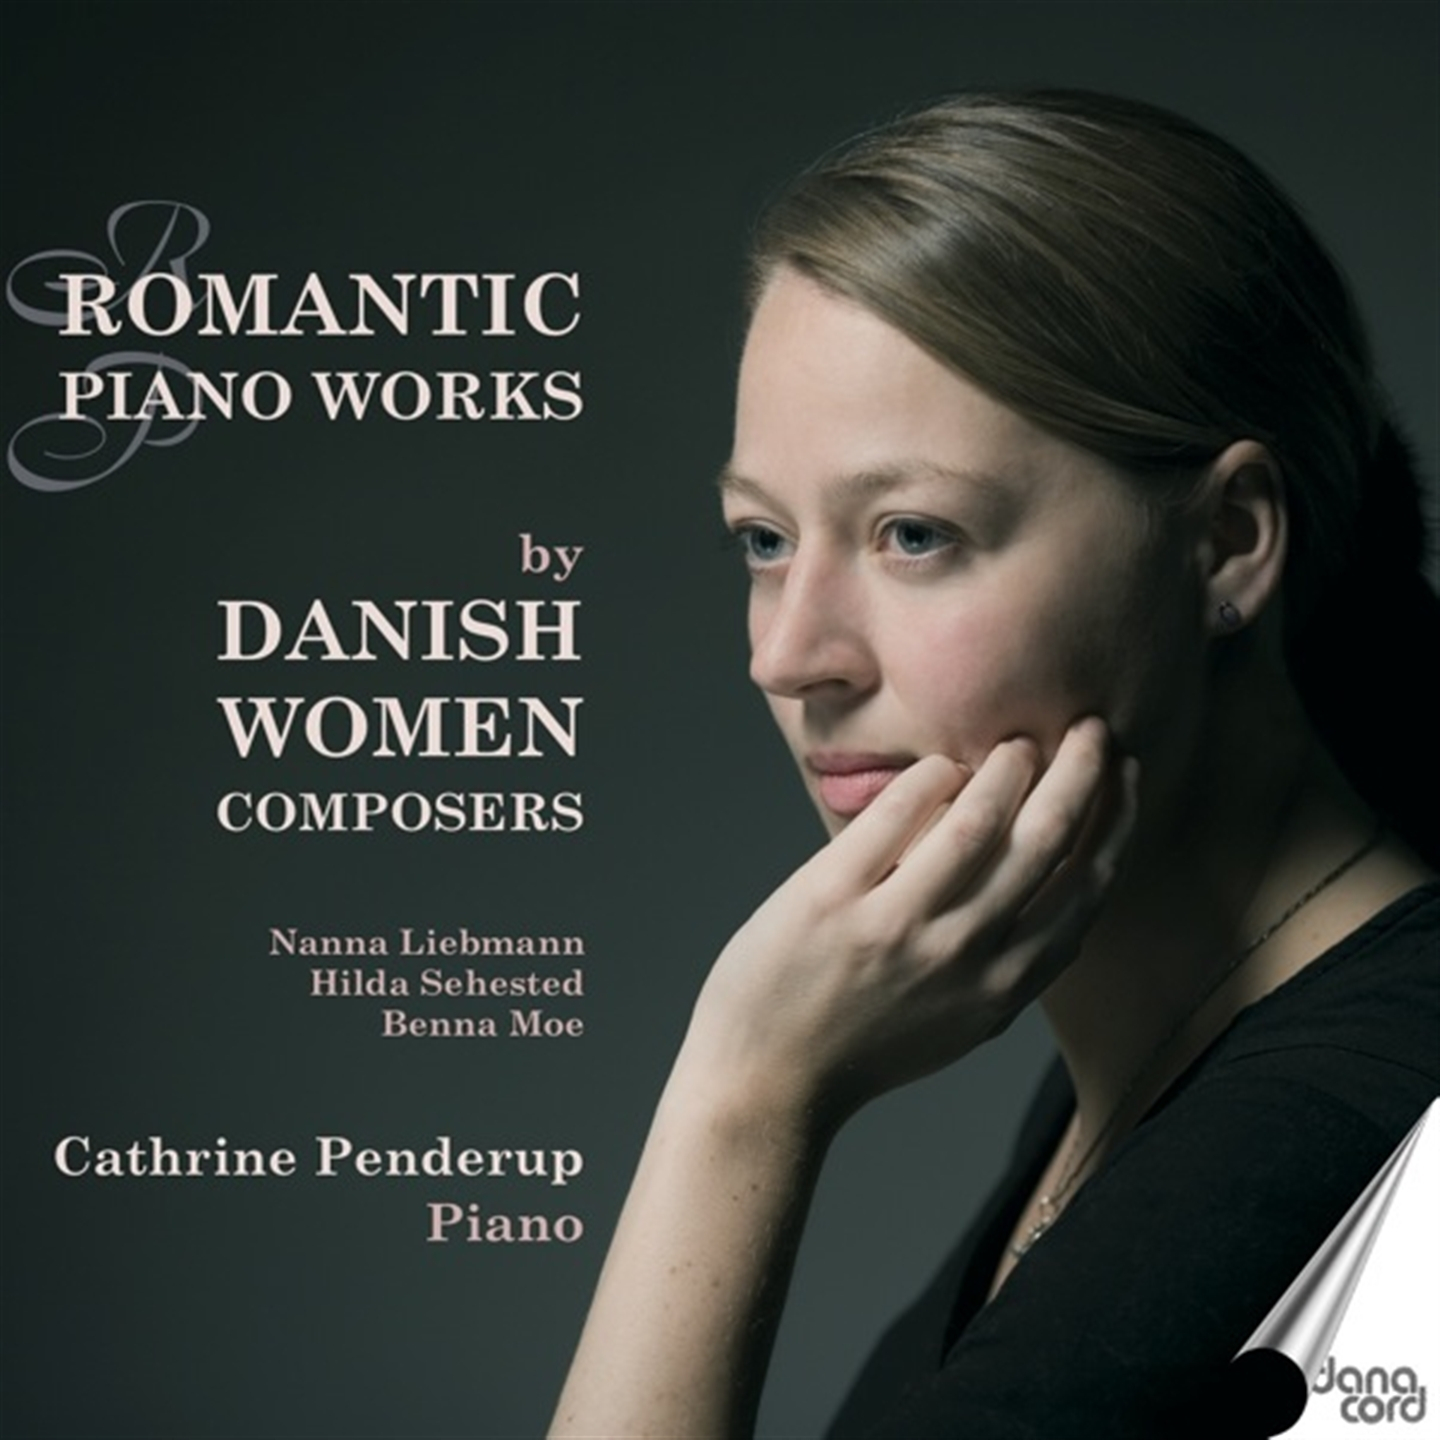 DANISH WOMEN COMPOSERS - PIANO MUSIC